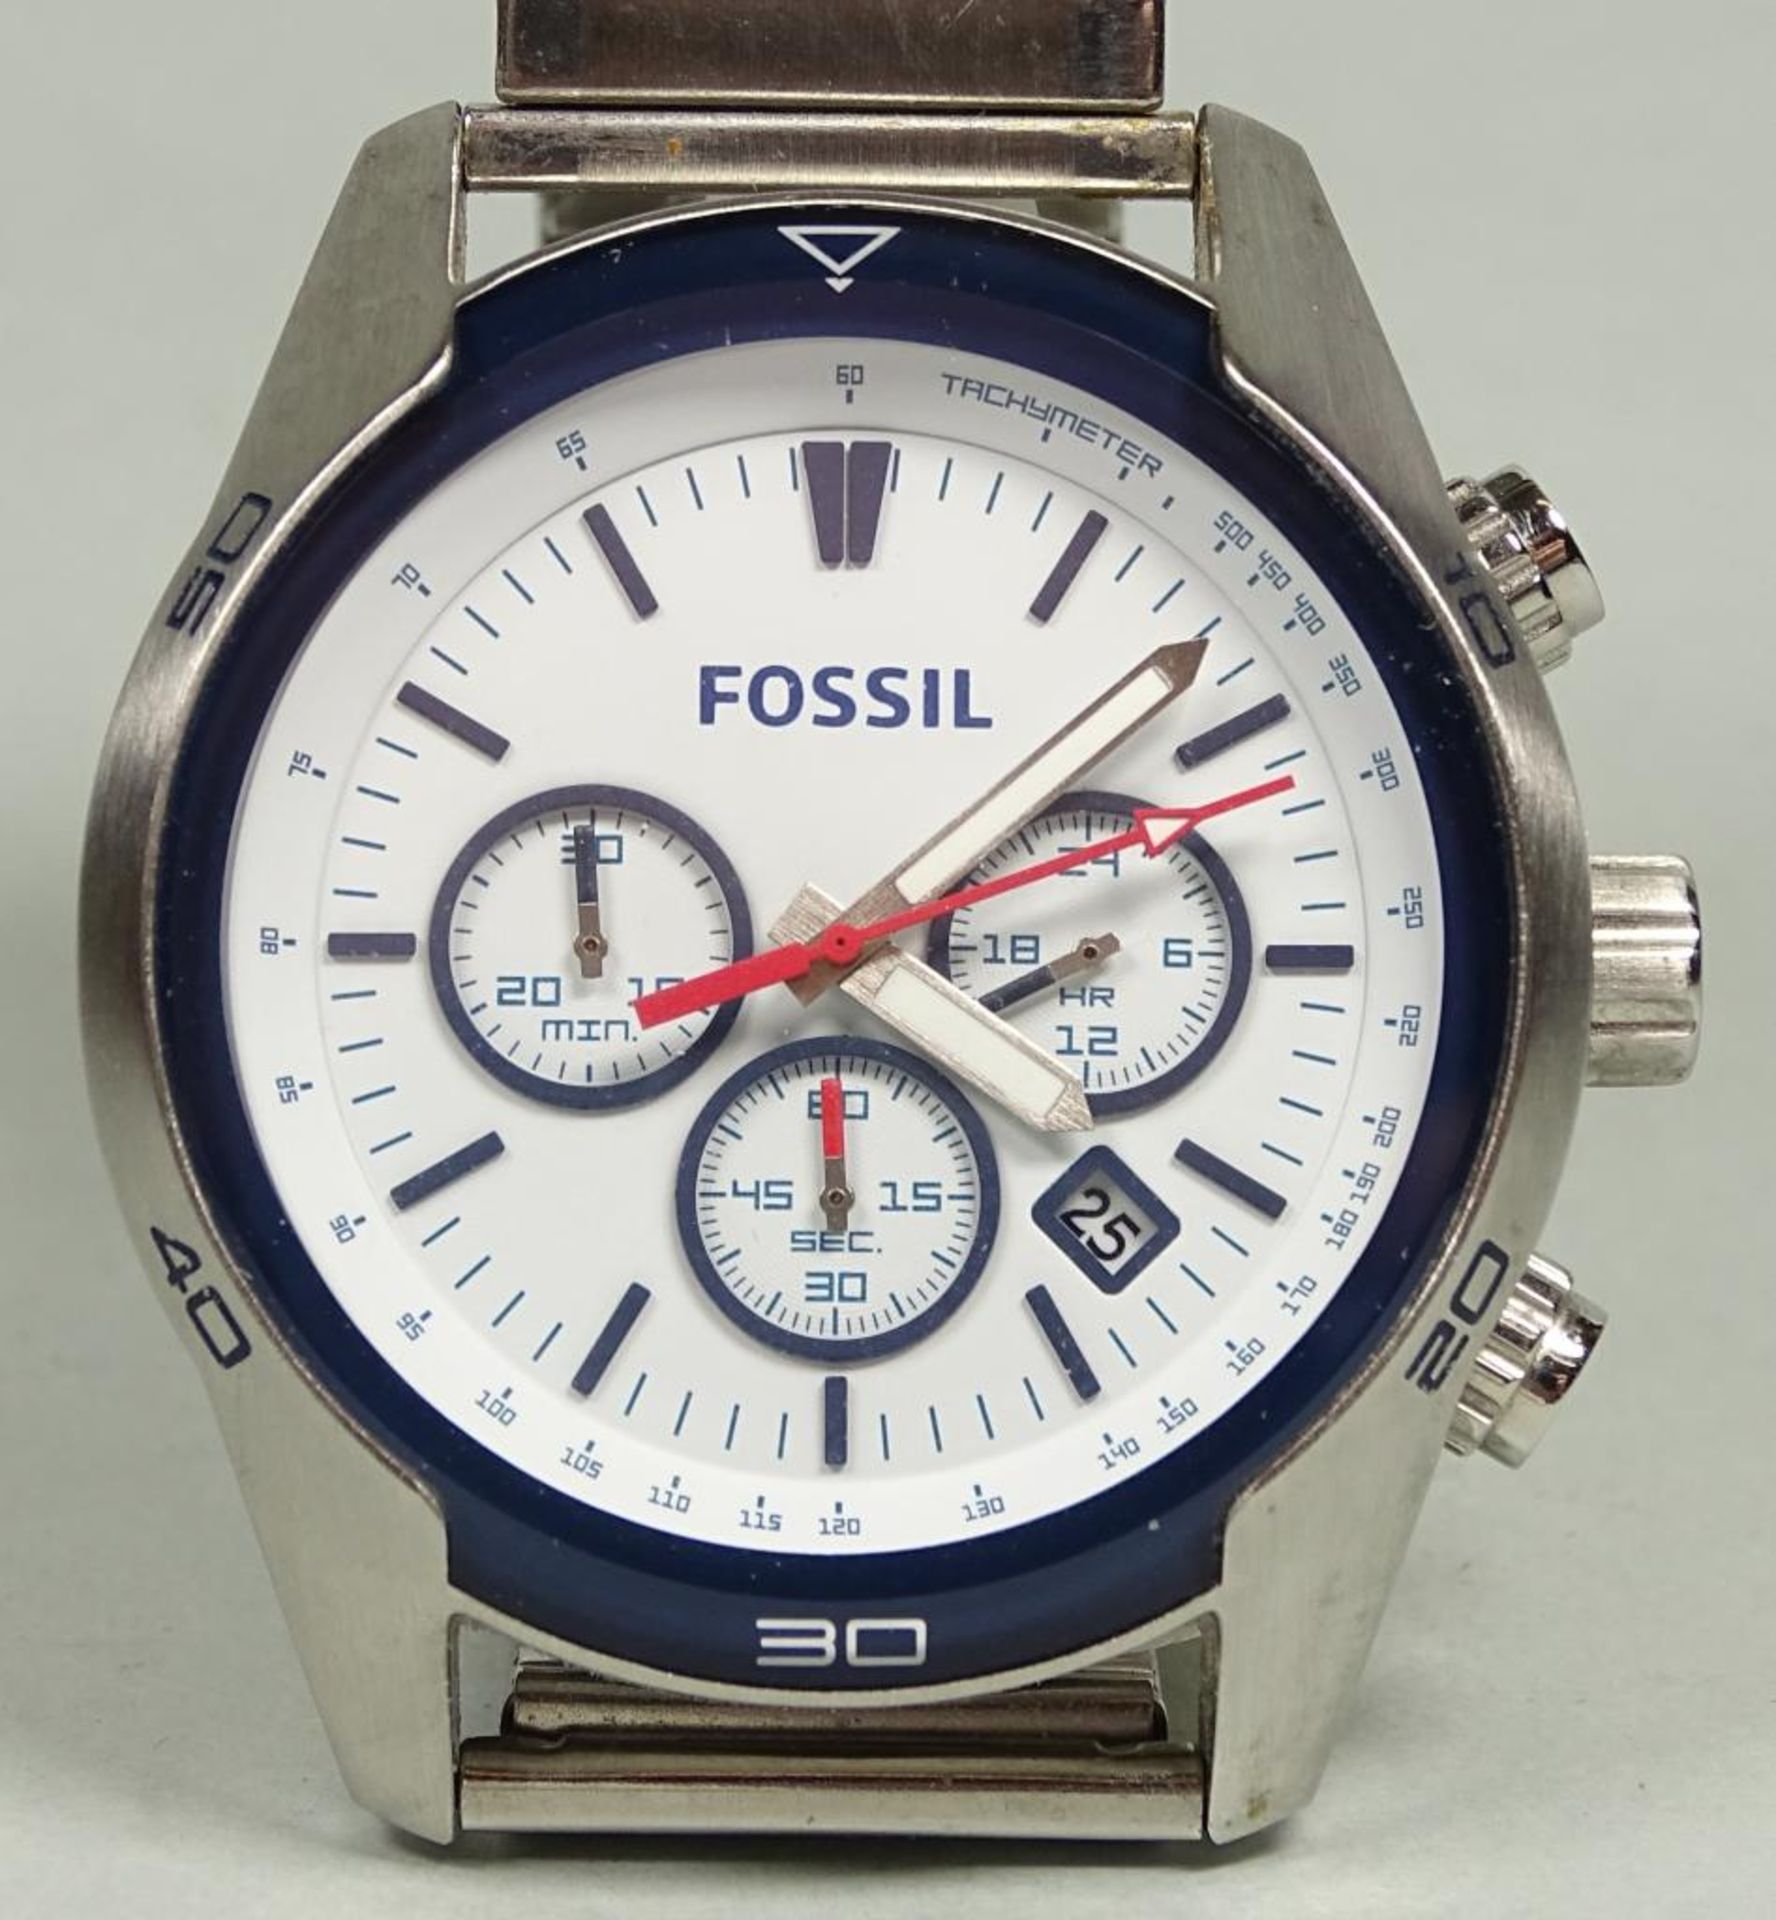 Herren Armbanduhr "Fossil", Choachman,wohl ungetragen,Lagerungsspuren,d-44mm,Quartz, - Bild 2 aus 5